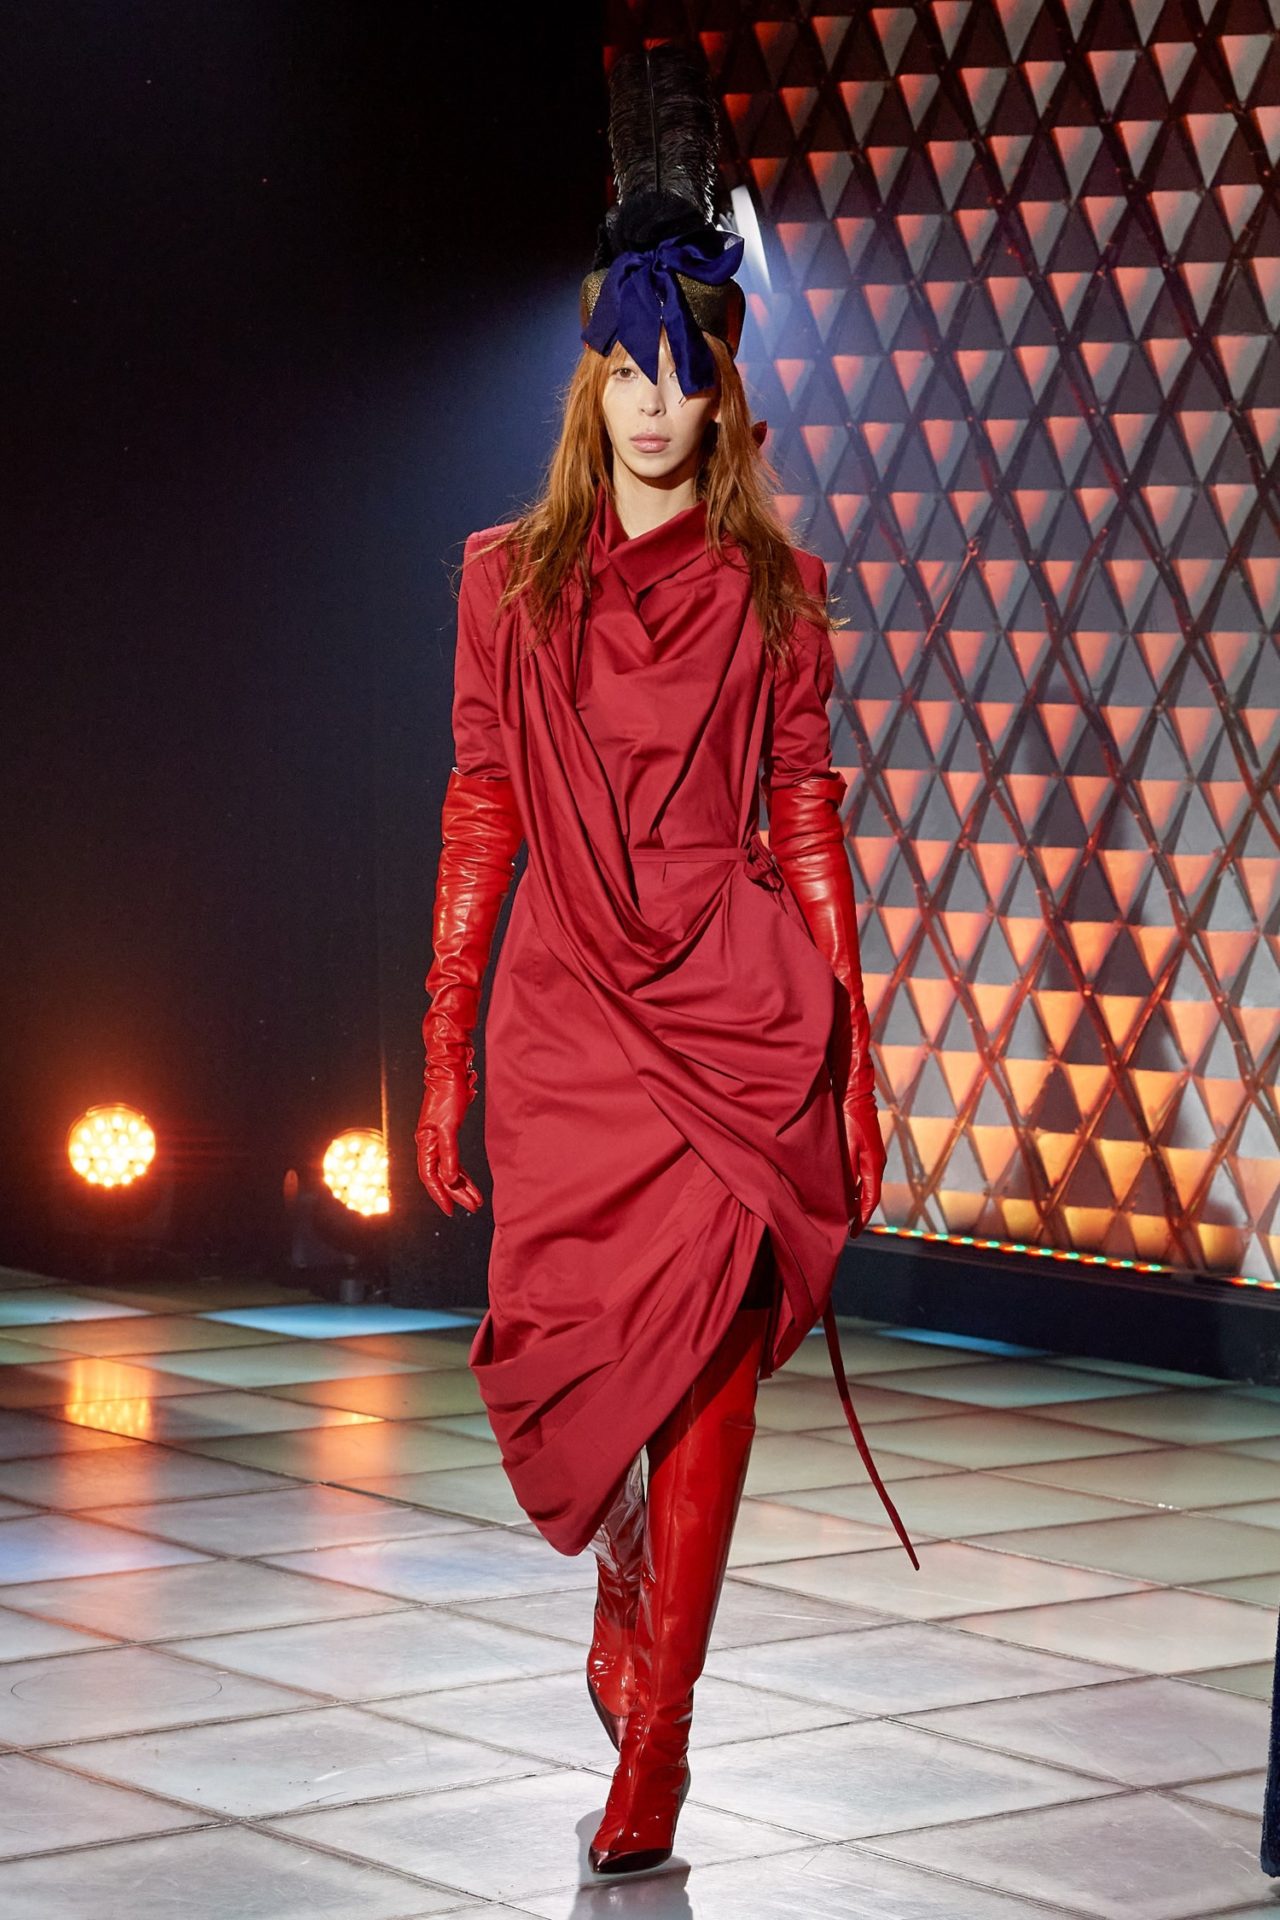 Vivienne Westwood at Paris fashion week 